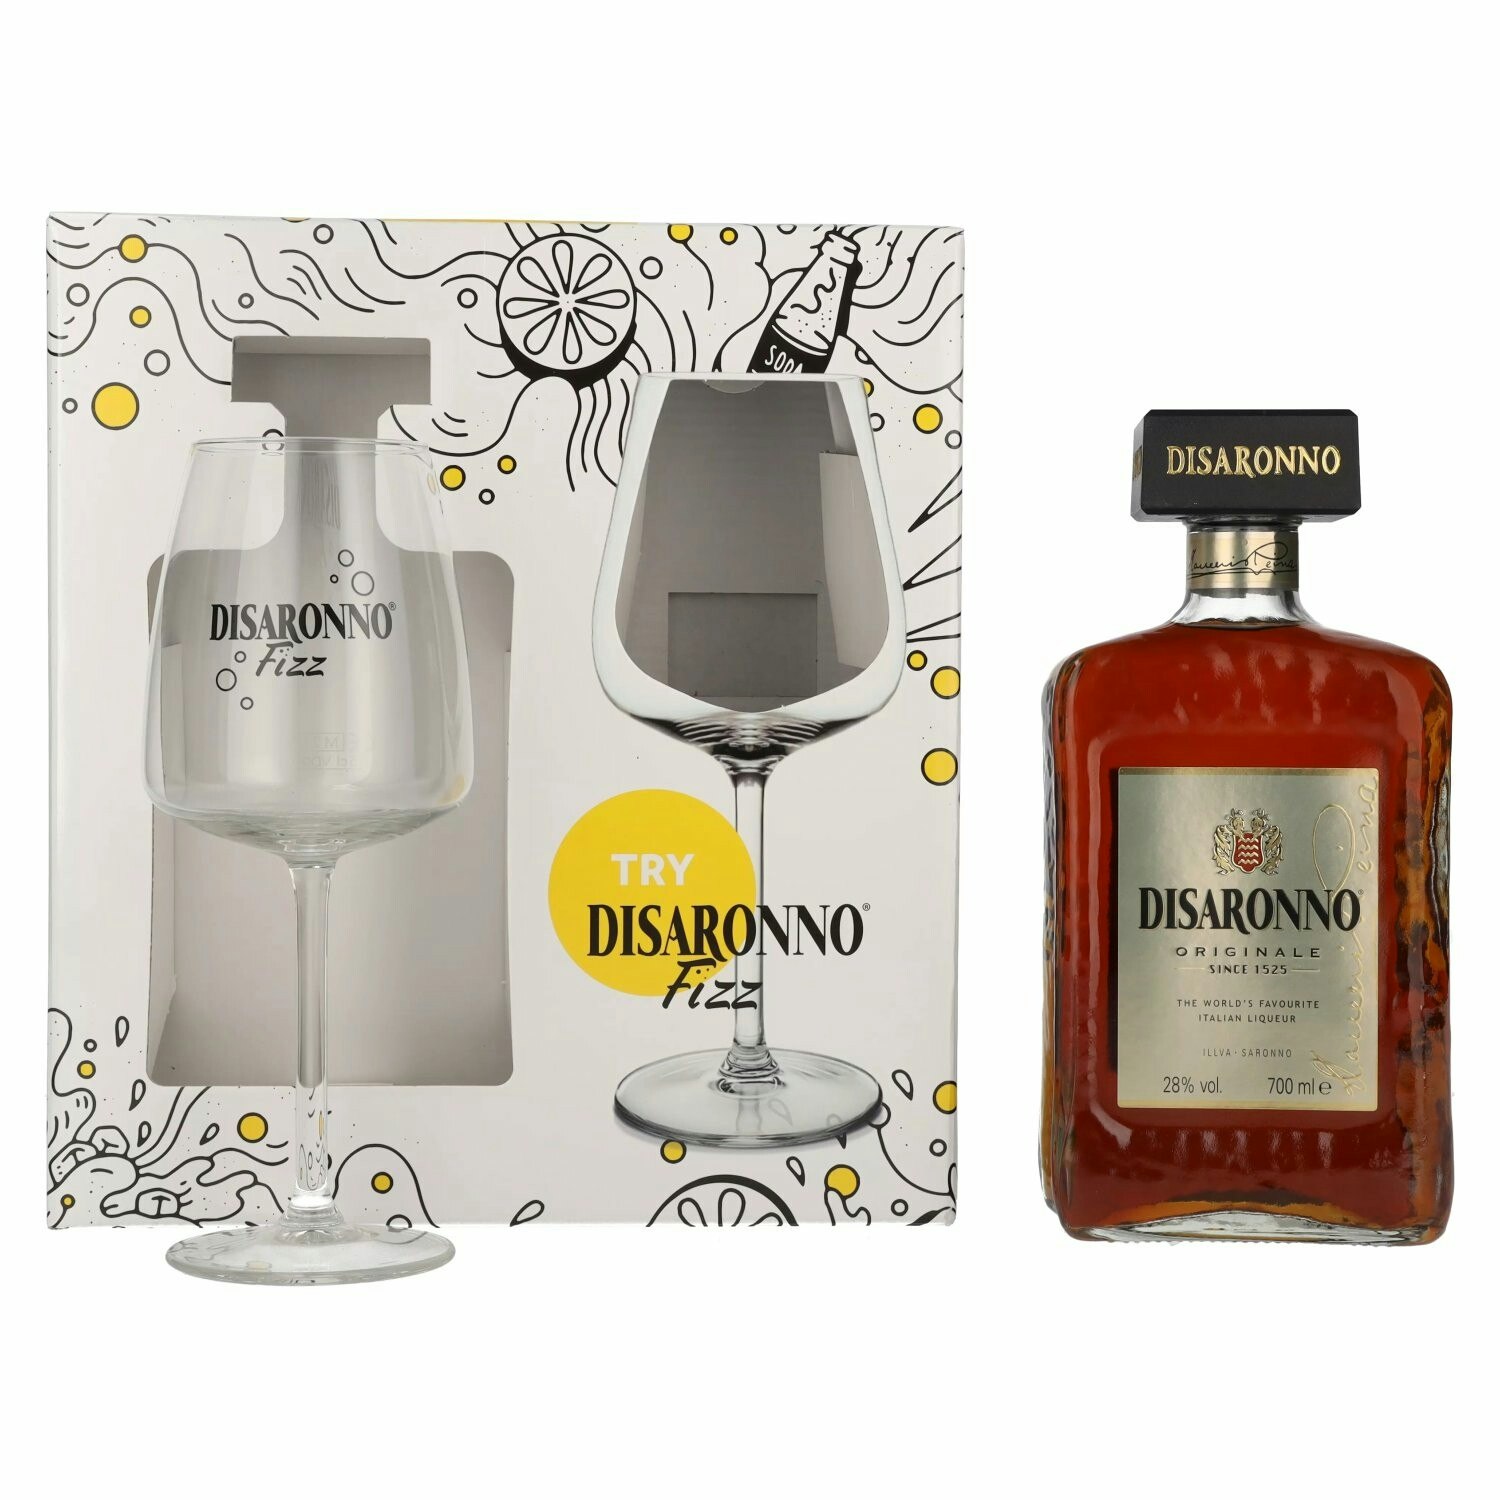 Disaronno Originale 28% Vol. 0,7l in Giftbox with Fizz glass